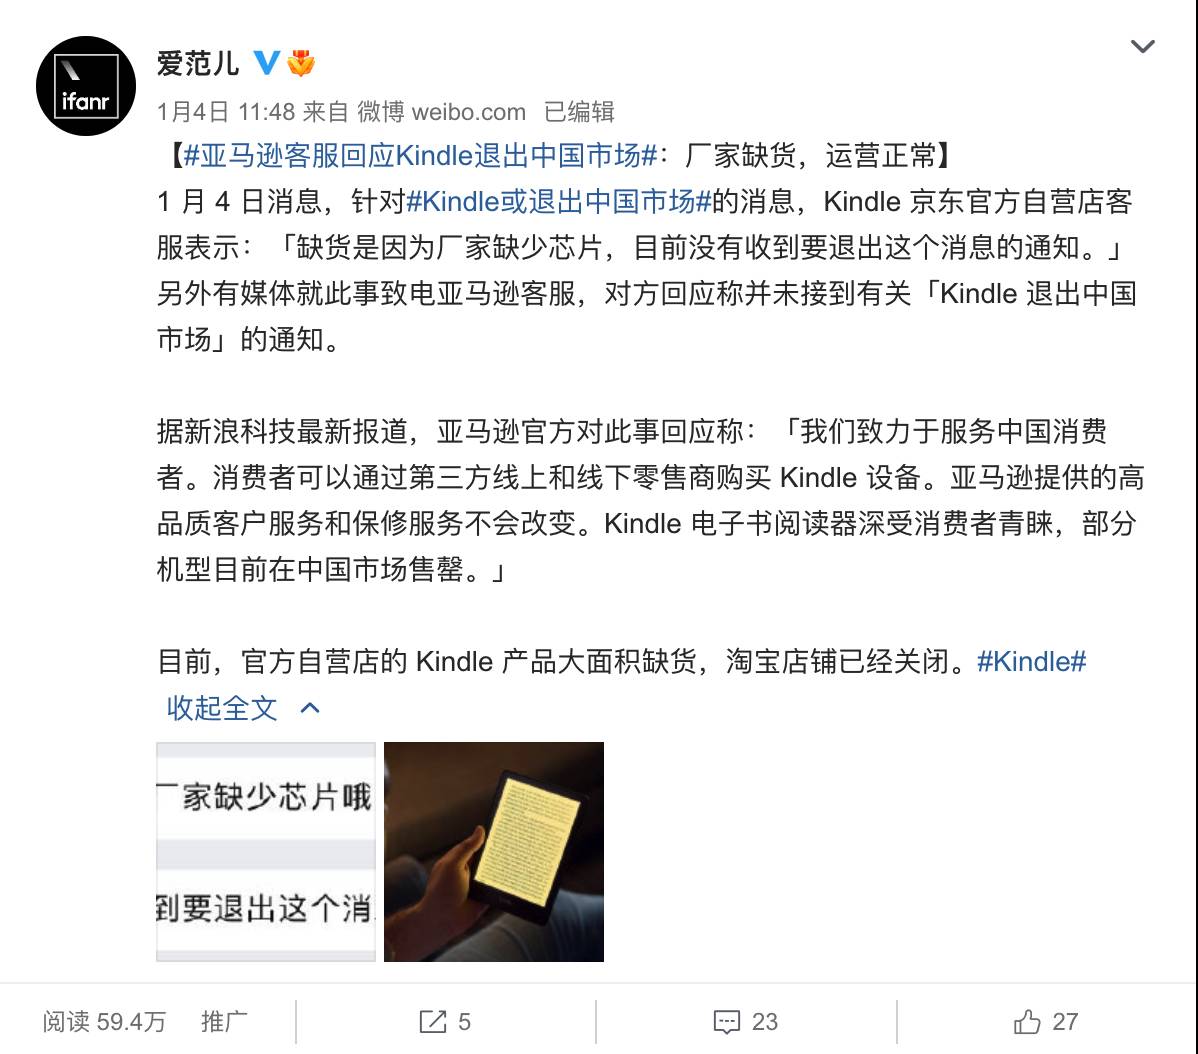 1526165415 - impreparato! Kindle ha annunciato di smettere di operare in Cina, l ‘”ascensore” del progresso è caduto improvvisamente